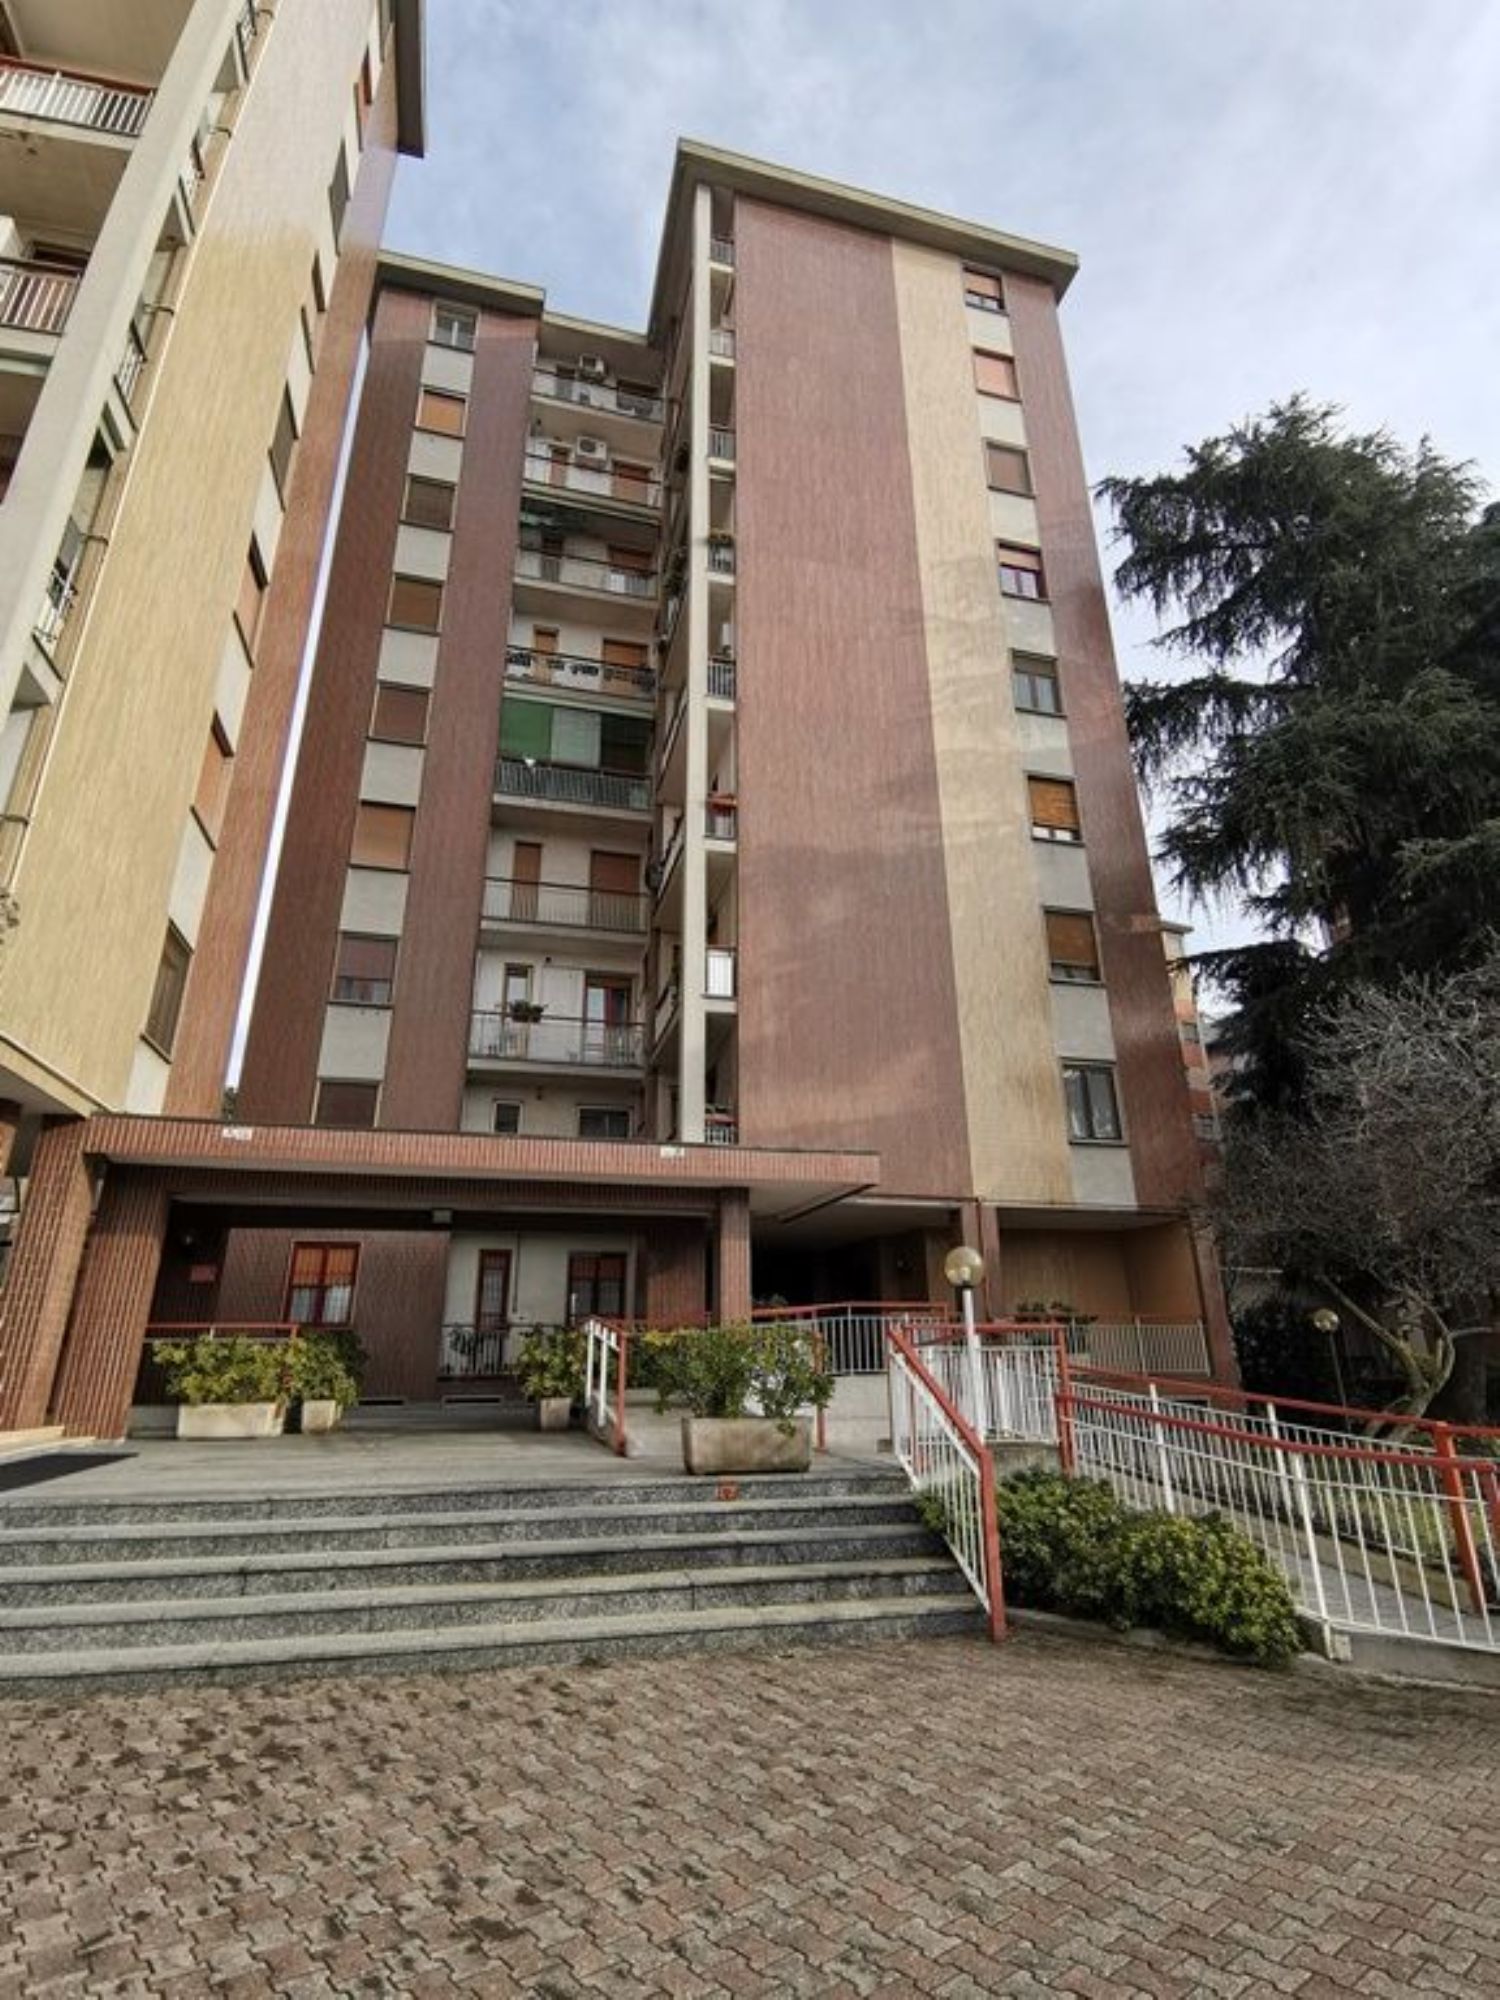 Appartamento in vendita a San Donato Milanese, 3 locali, prezzo € 225.000 | PortaleAgenzieImmobiliari.it